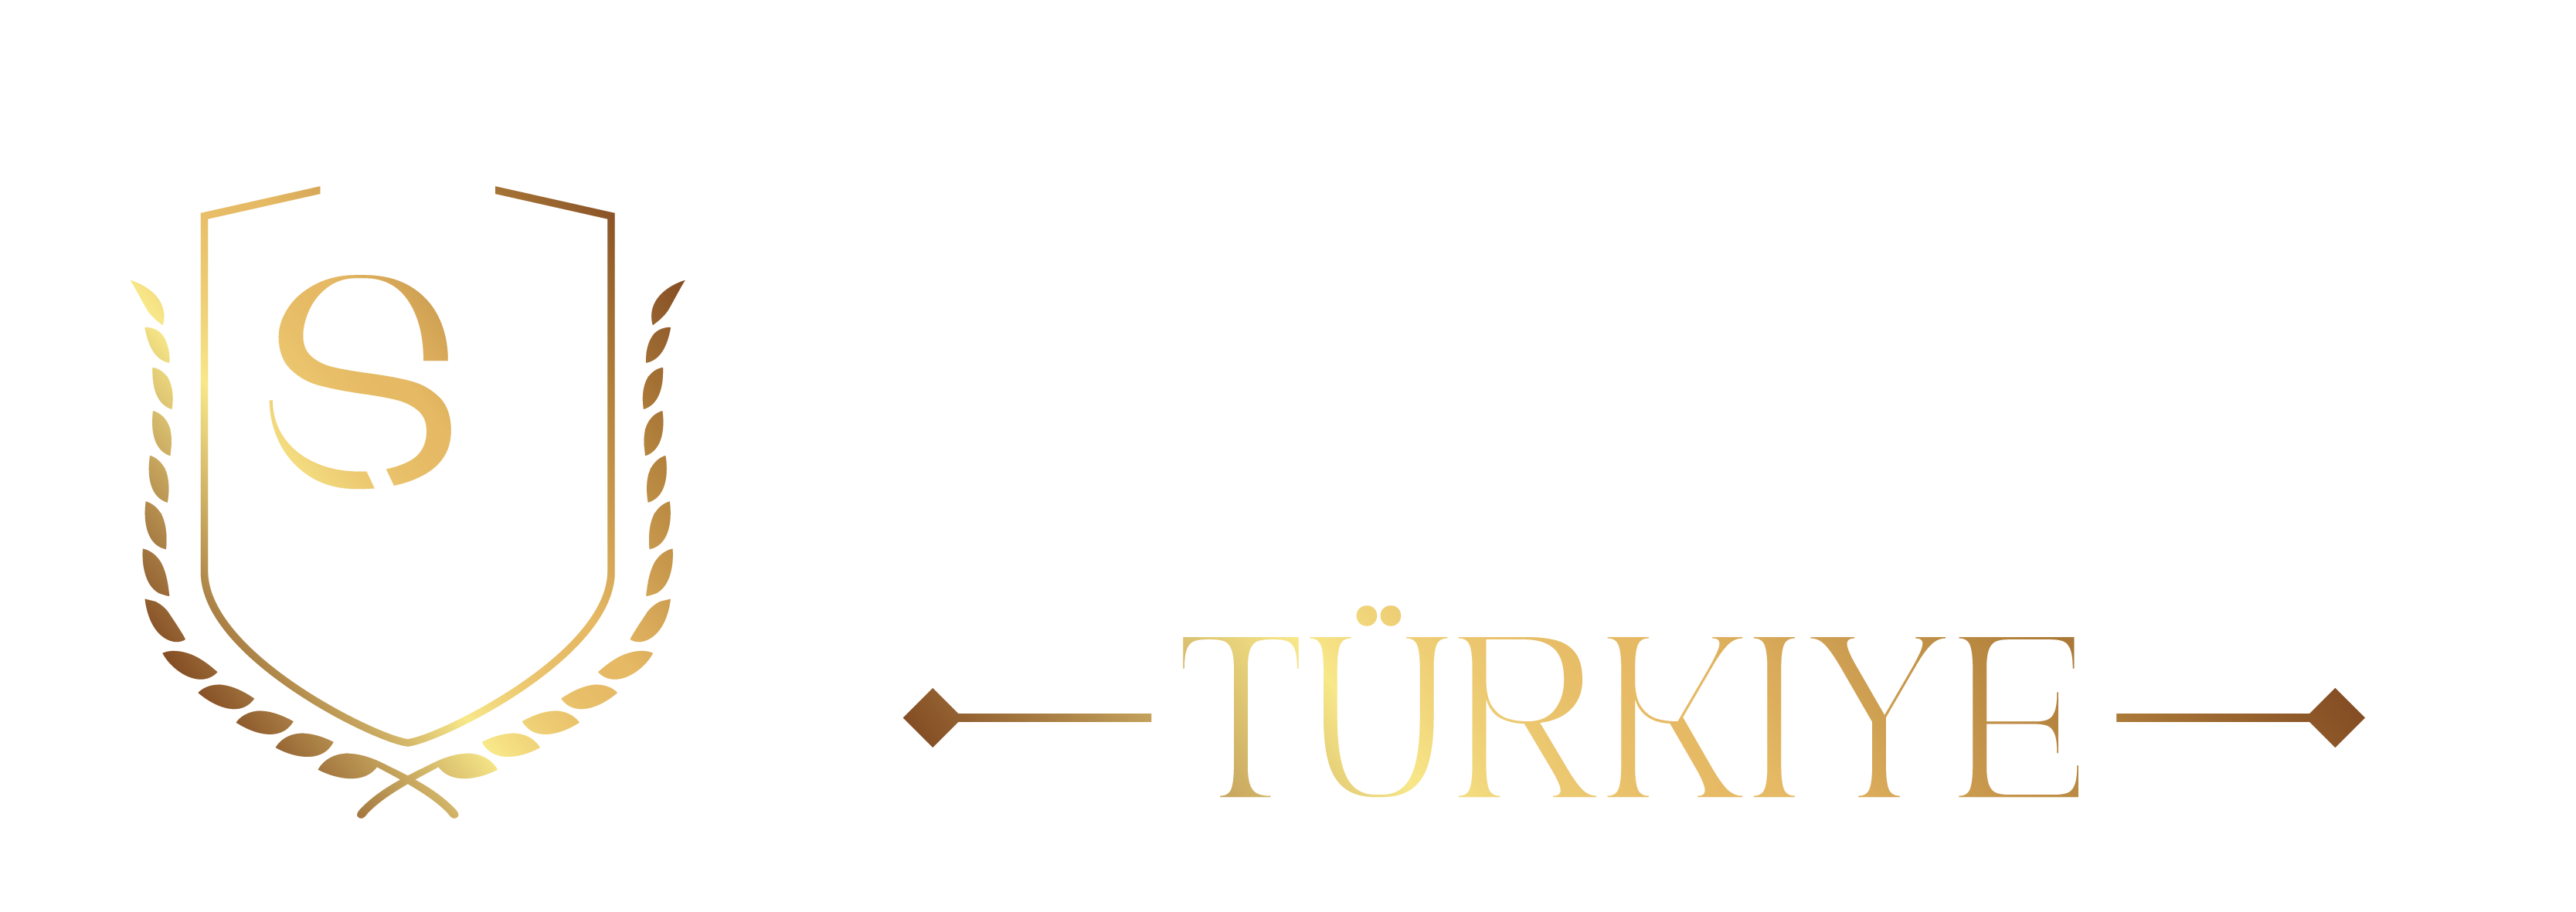 SM Property Turkiye